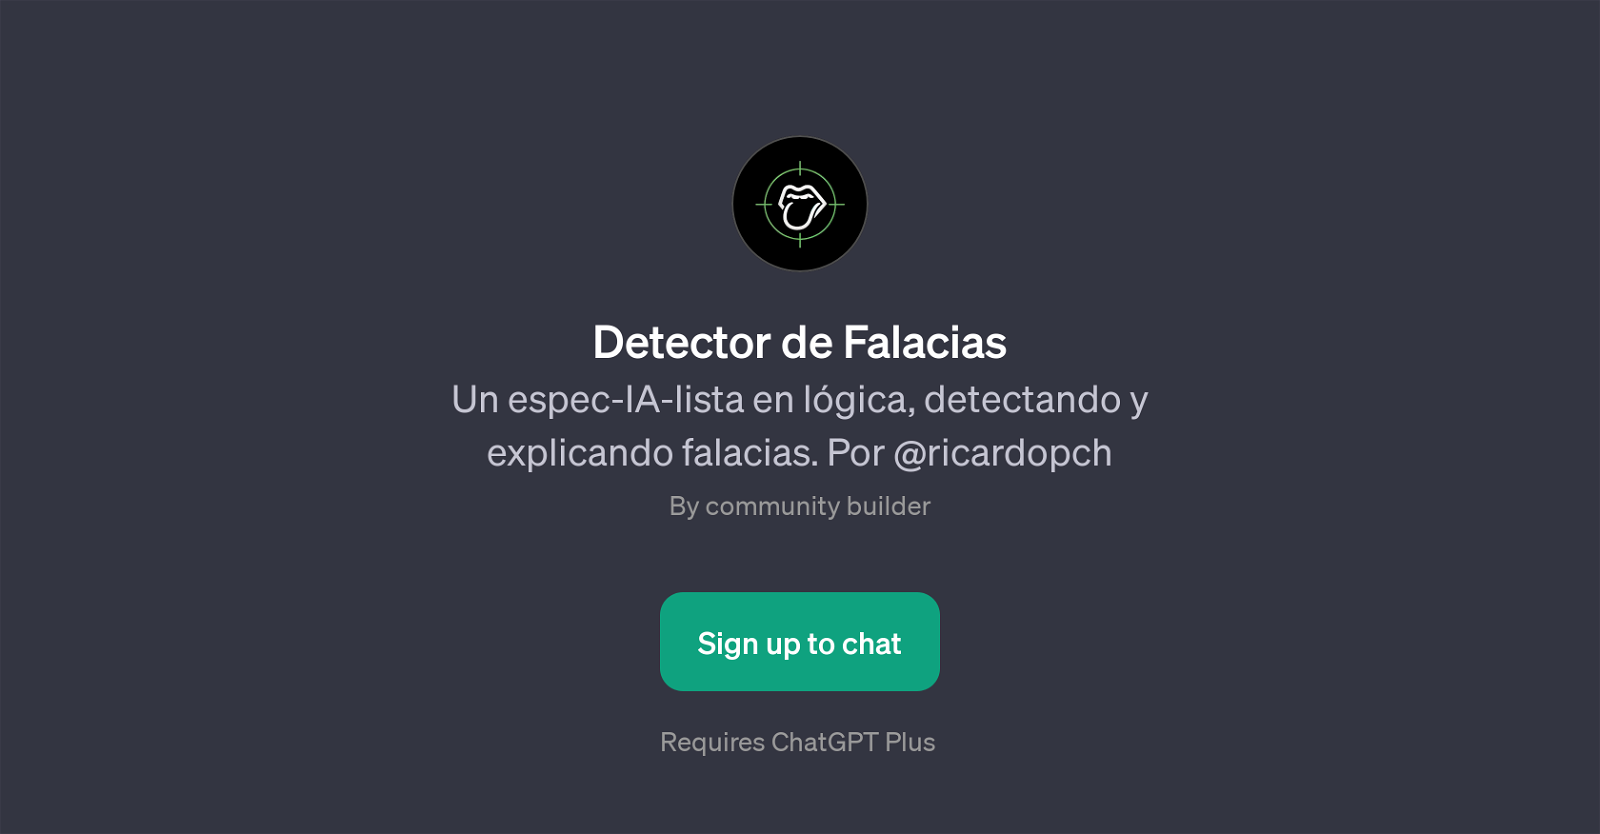 Detector de Falacias website